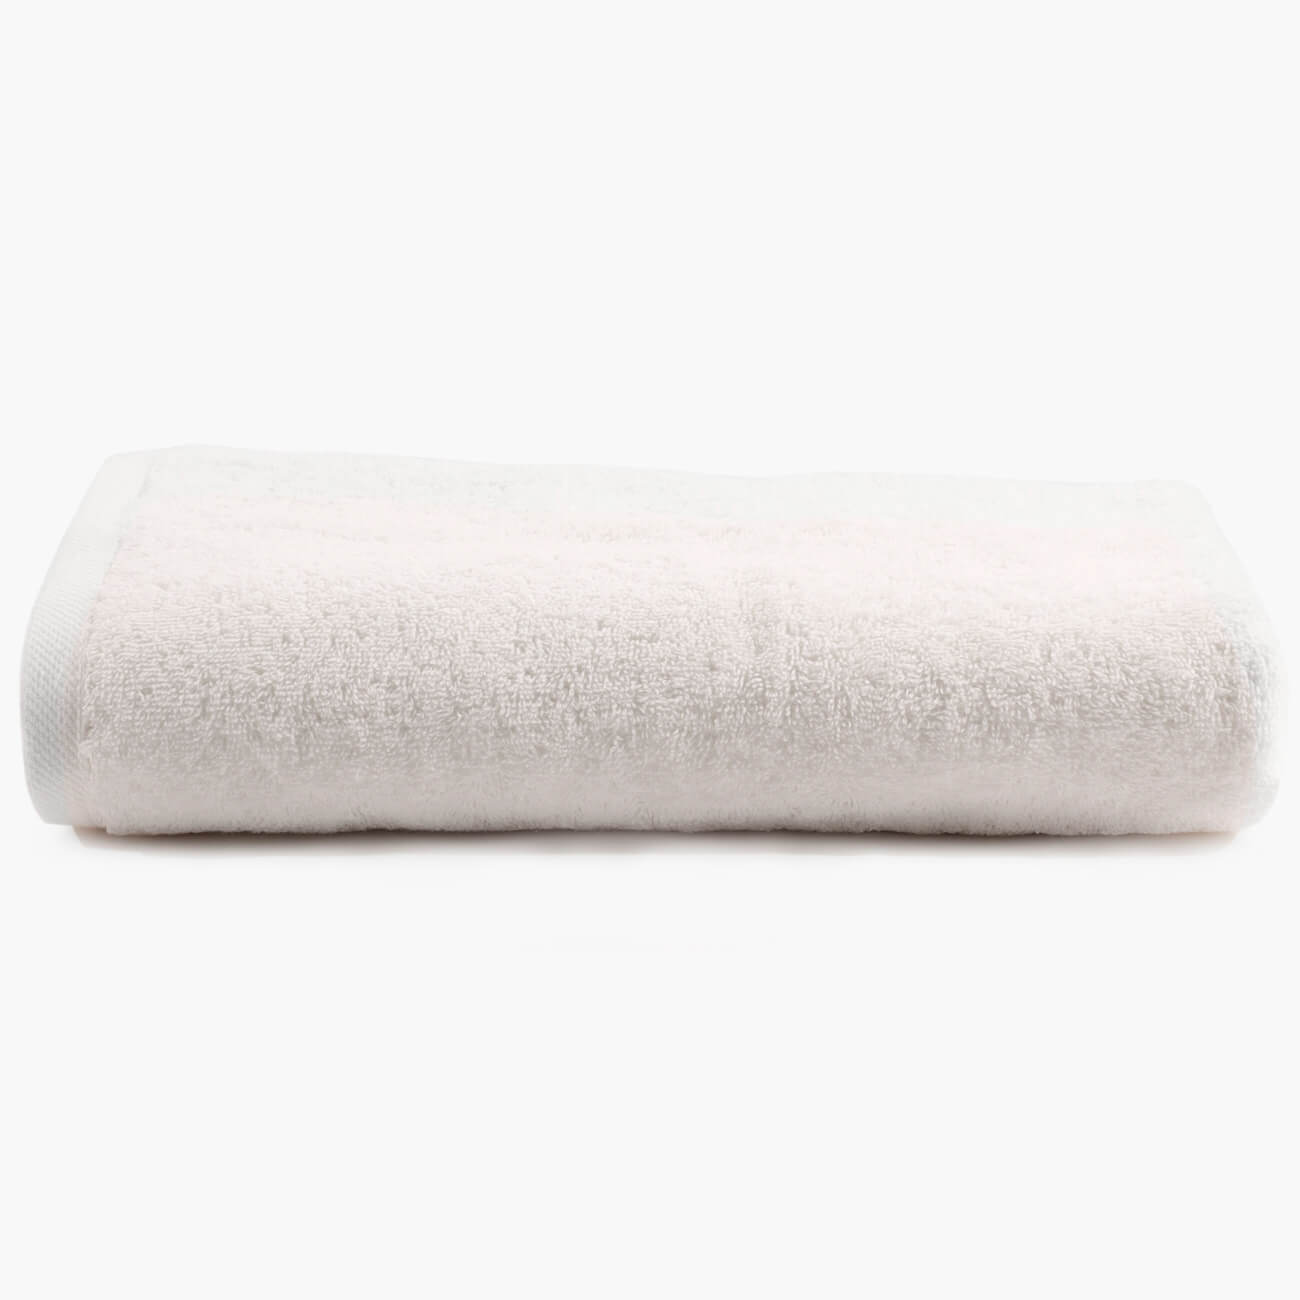 Полотенце, 70х140 см, хлопок, молочное, Wellness бумажное полотенце лайма